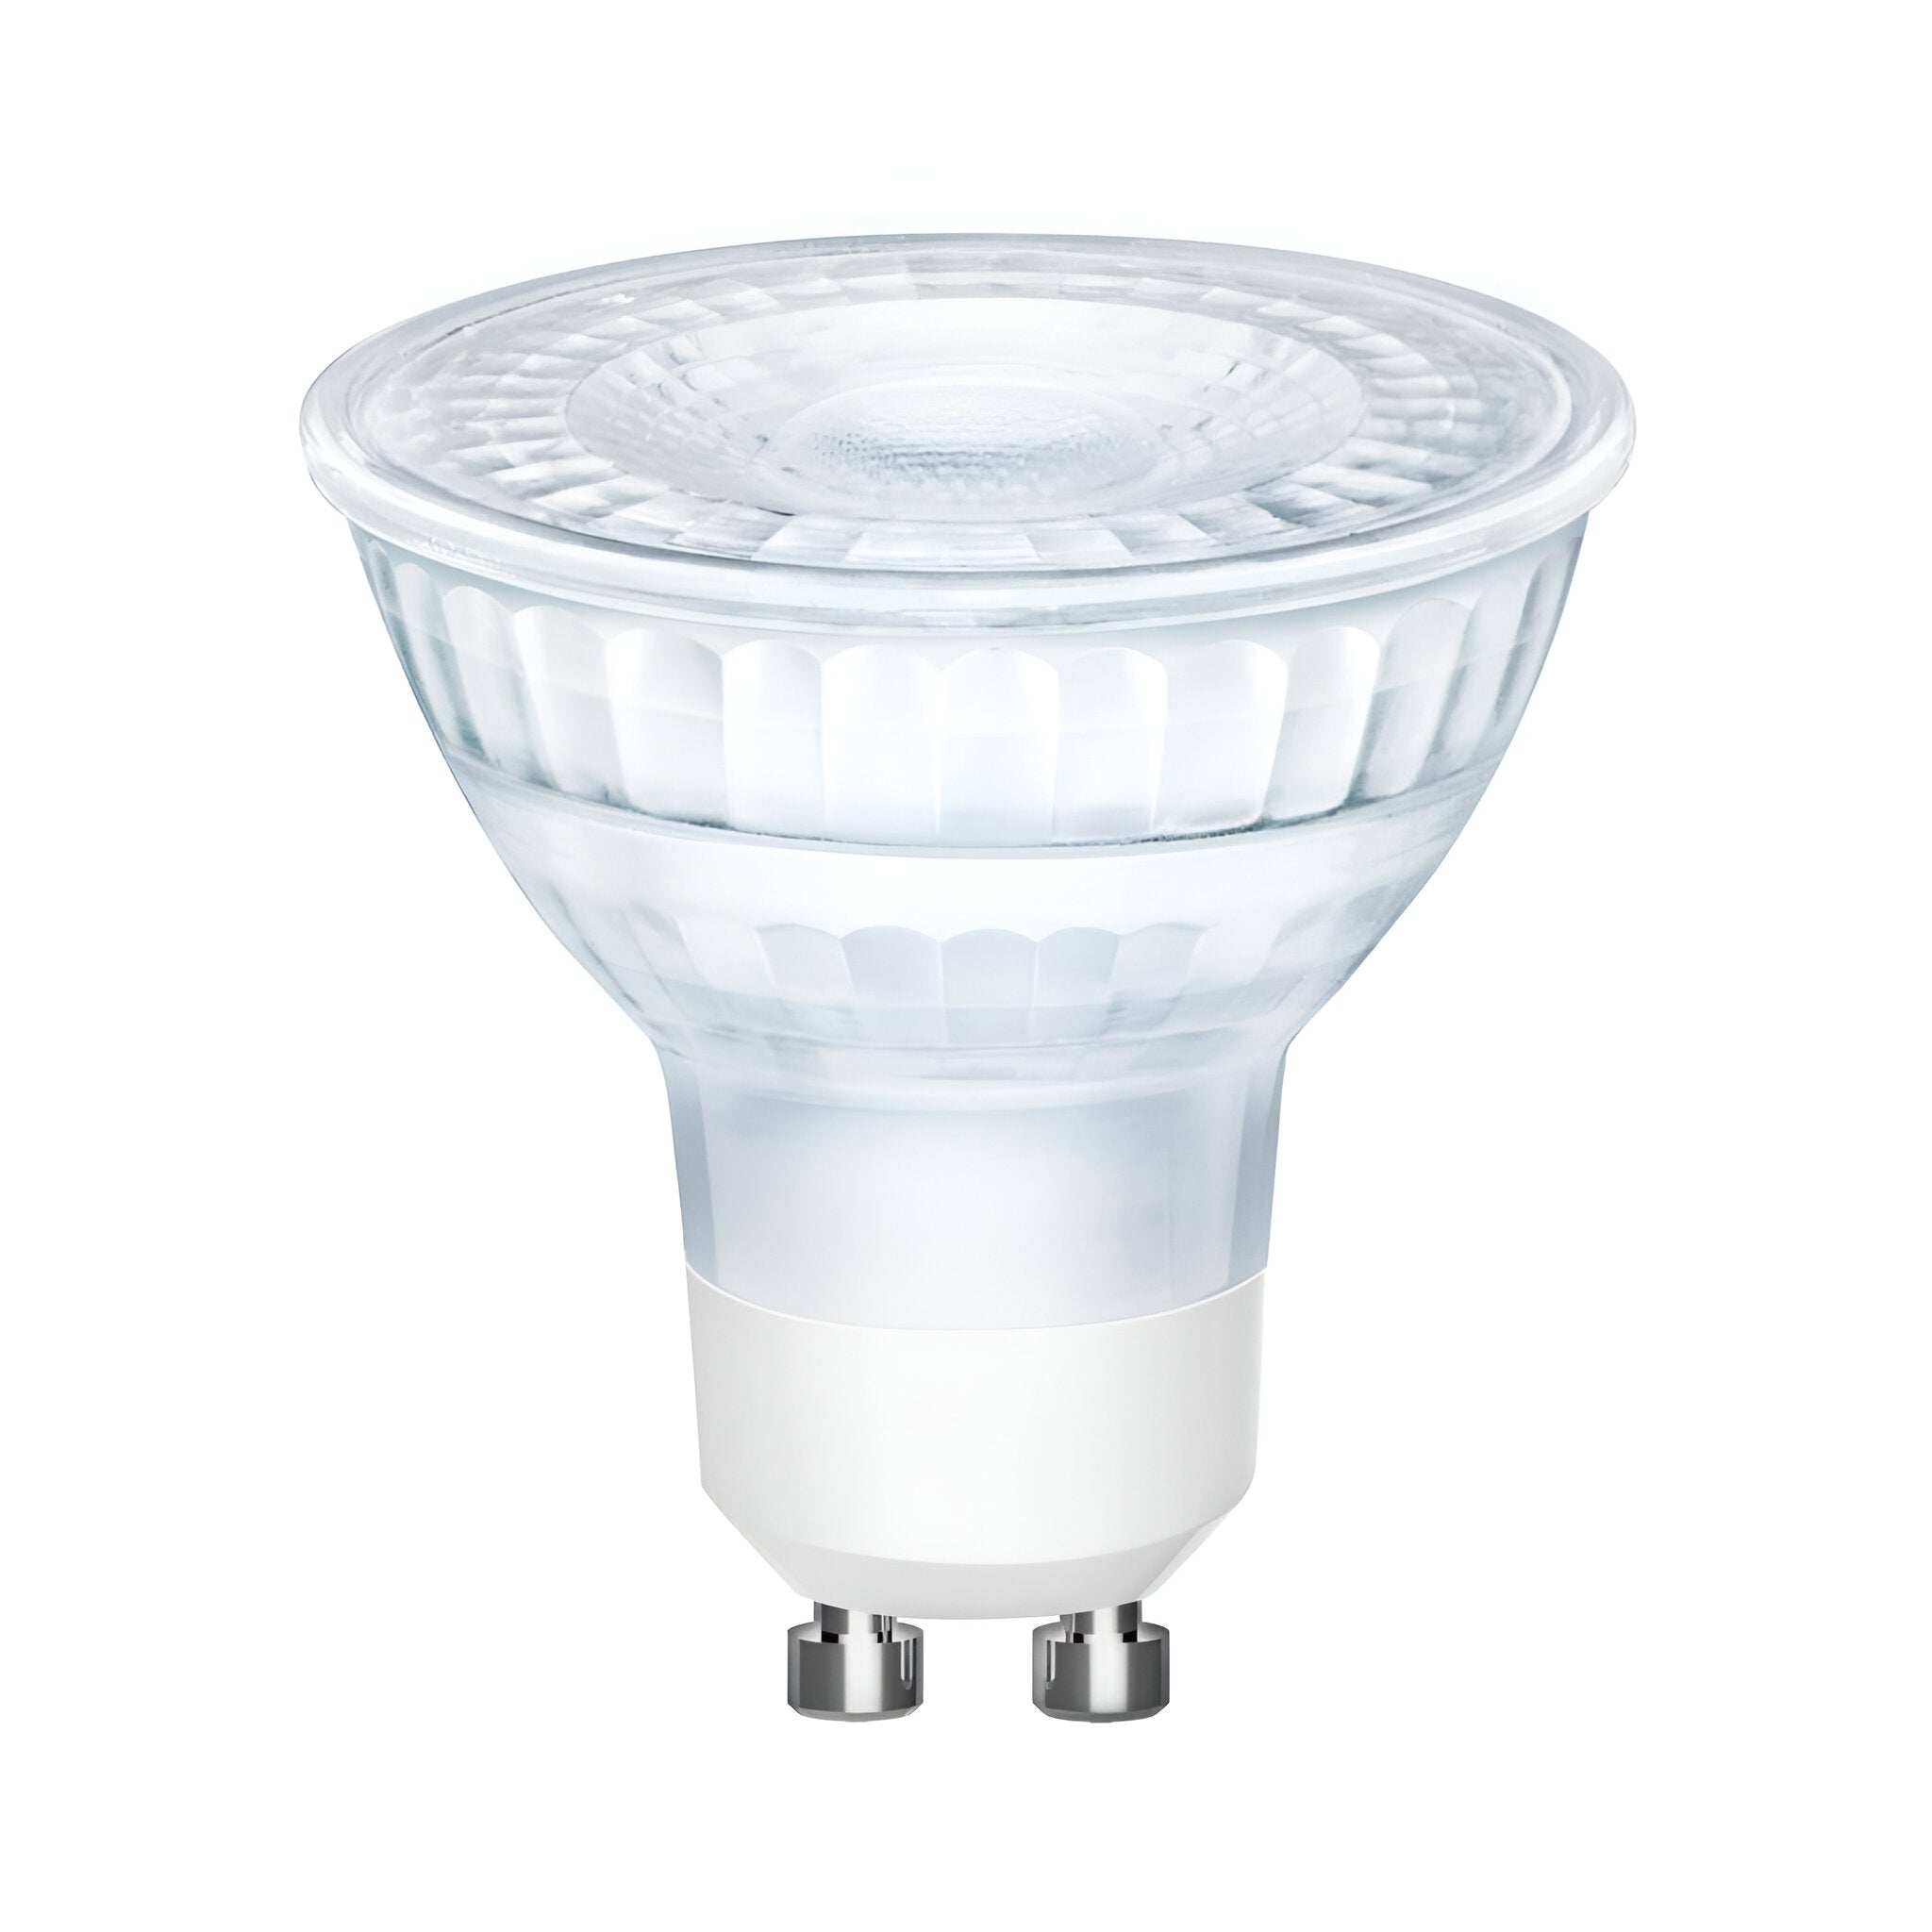 Domus GU10 6W Glass LED Dimmable Lamp 240V 5000K - Mases LightingDomus